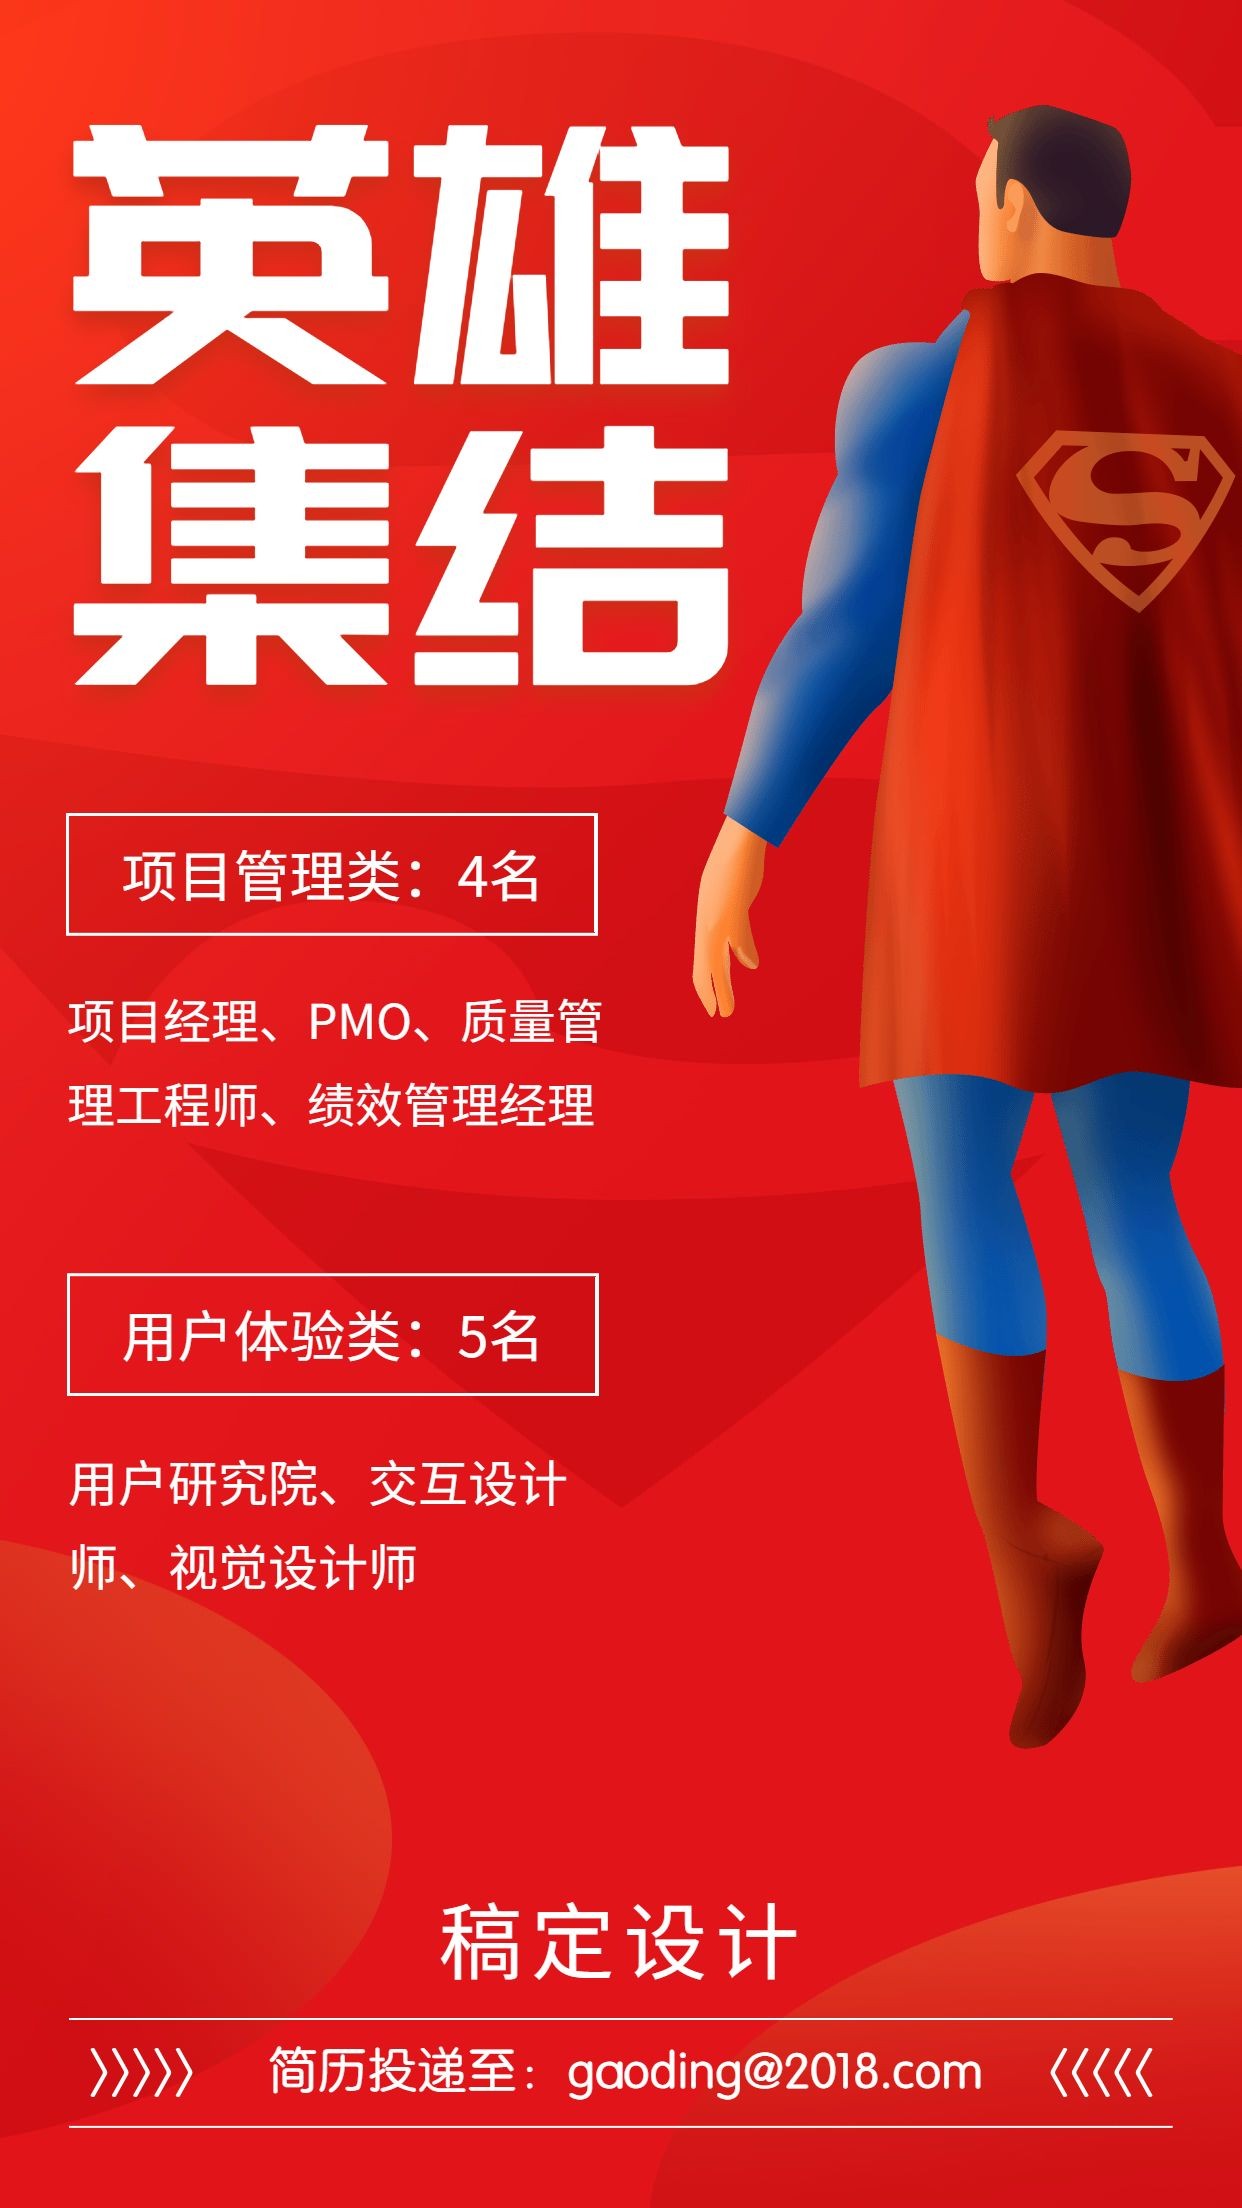 英雄集结超人创意招聘海报预览效果